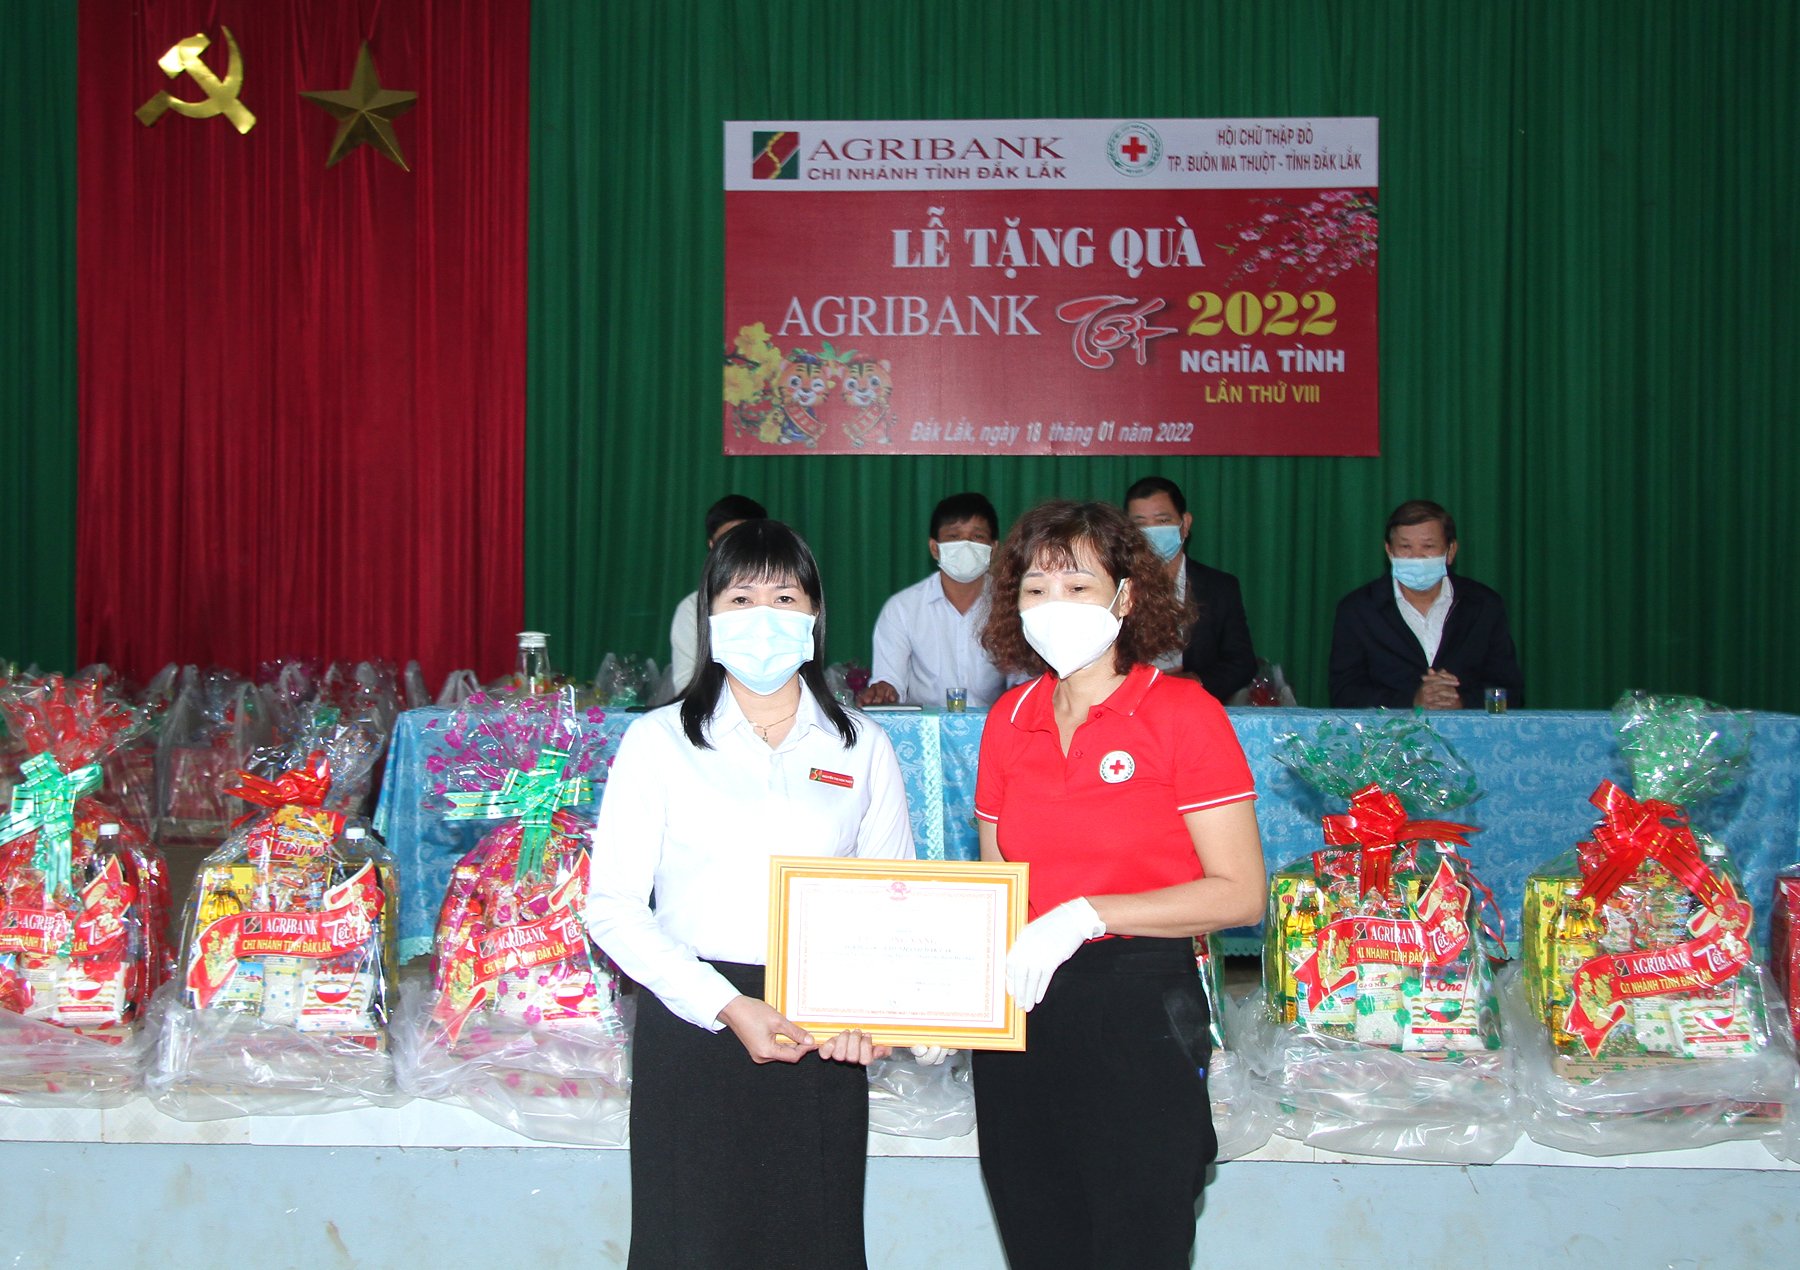 Agribank Đắk Lắk, tổ chức thành công chương trình an sinh xã hội dịp Tết – 2022 - Ảnh 3.